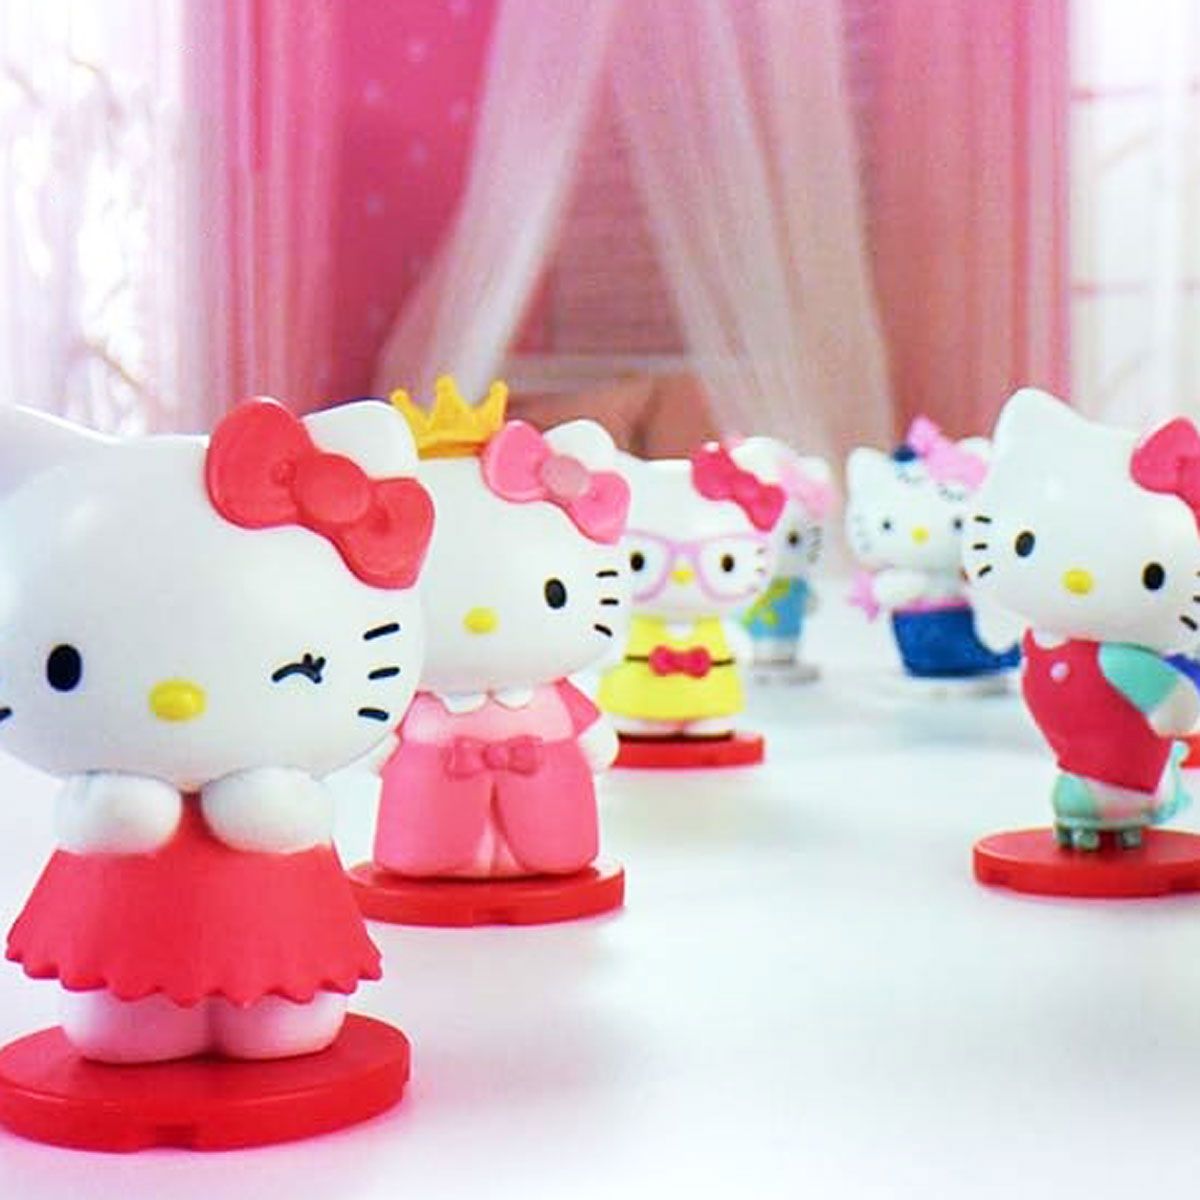 Іграшка-сюрприз "Hello Kitty: Гарнюні"